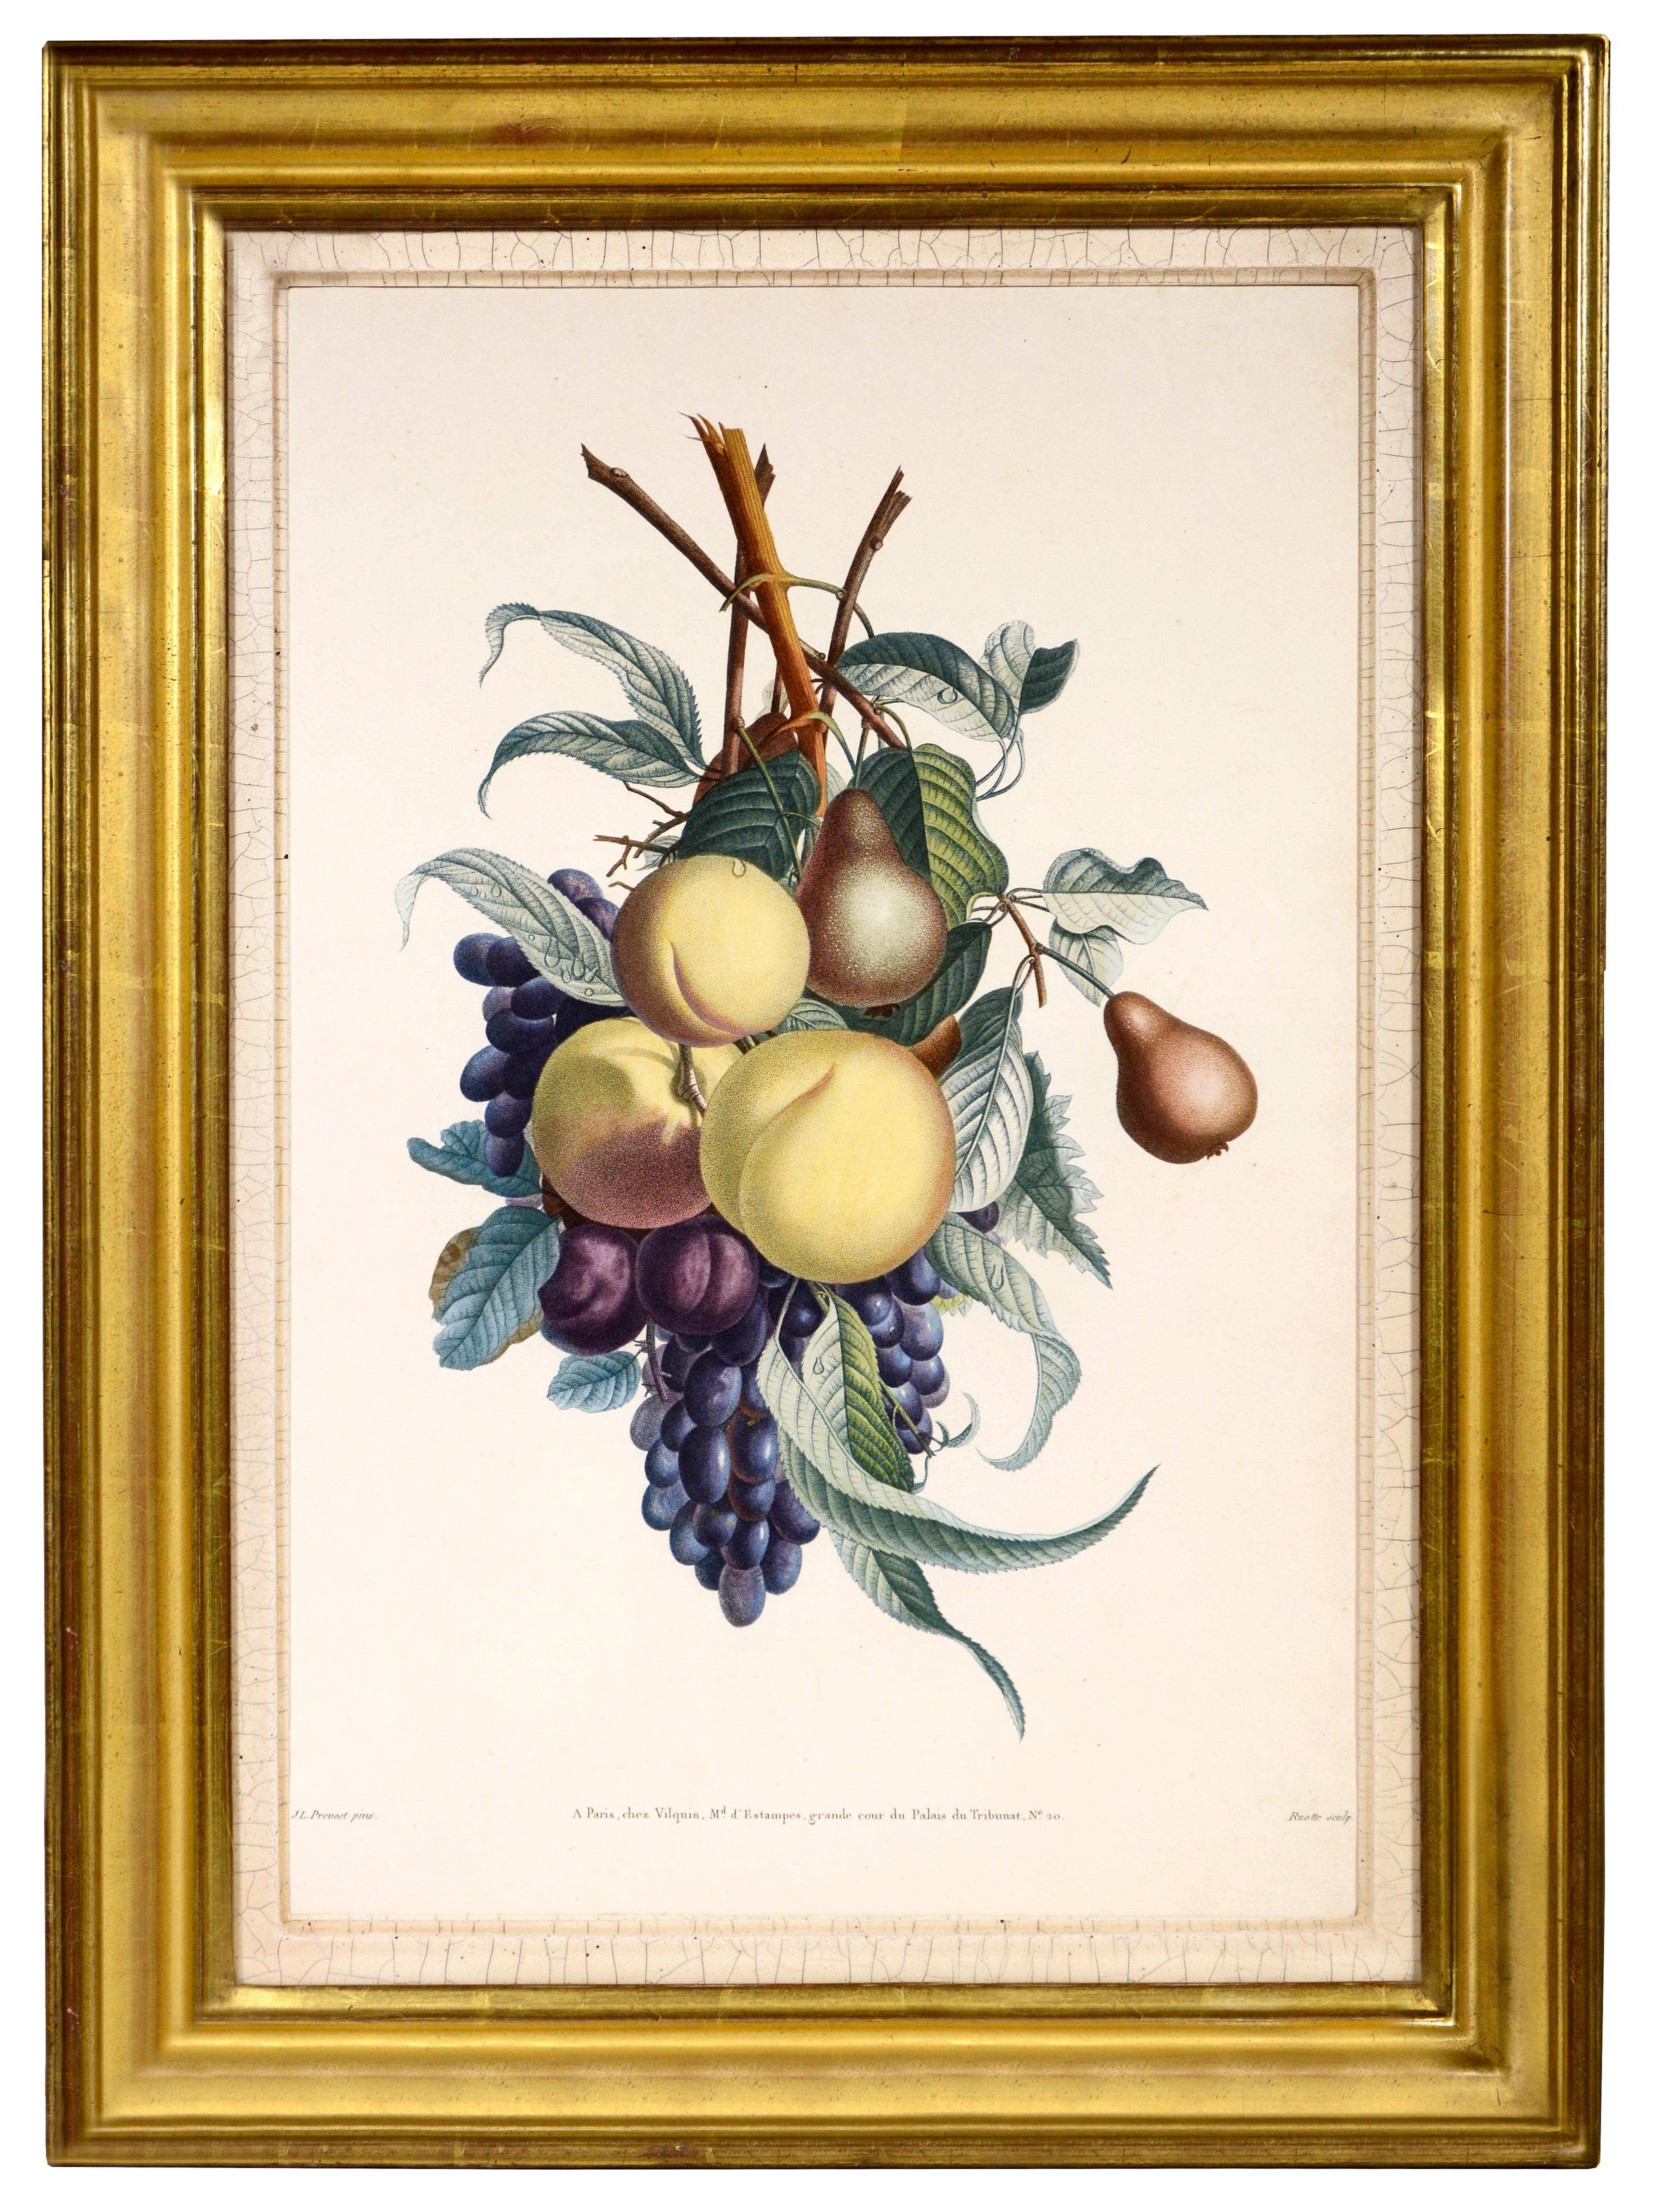 PRÉVOST. Print from a Collection des Fleurs et des Fruits